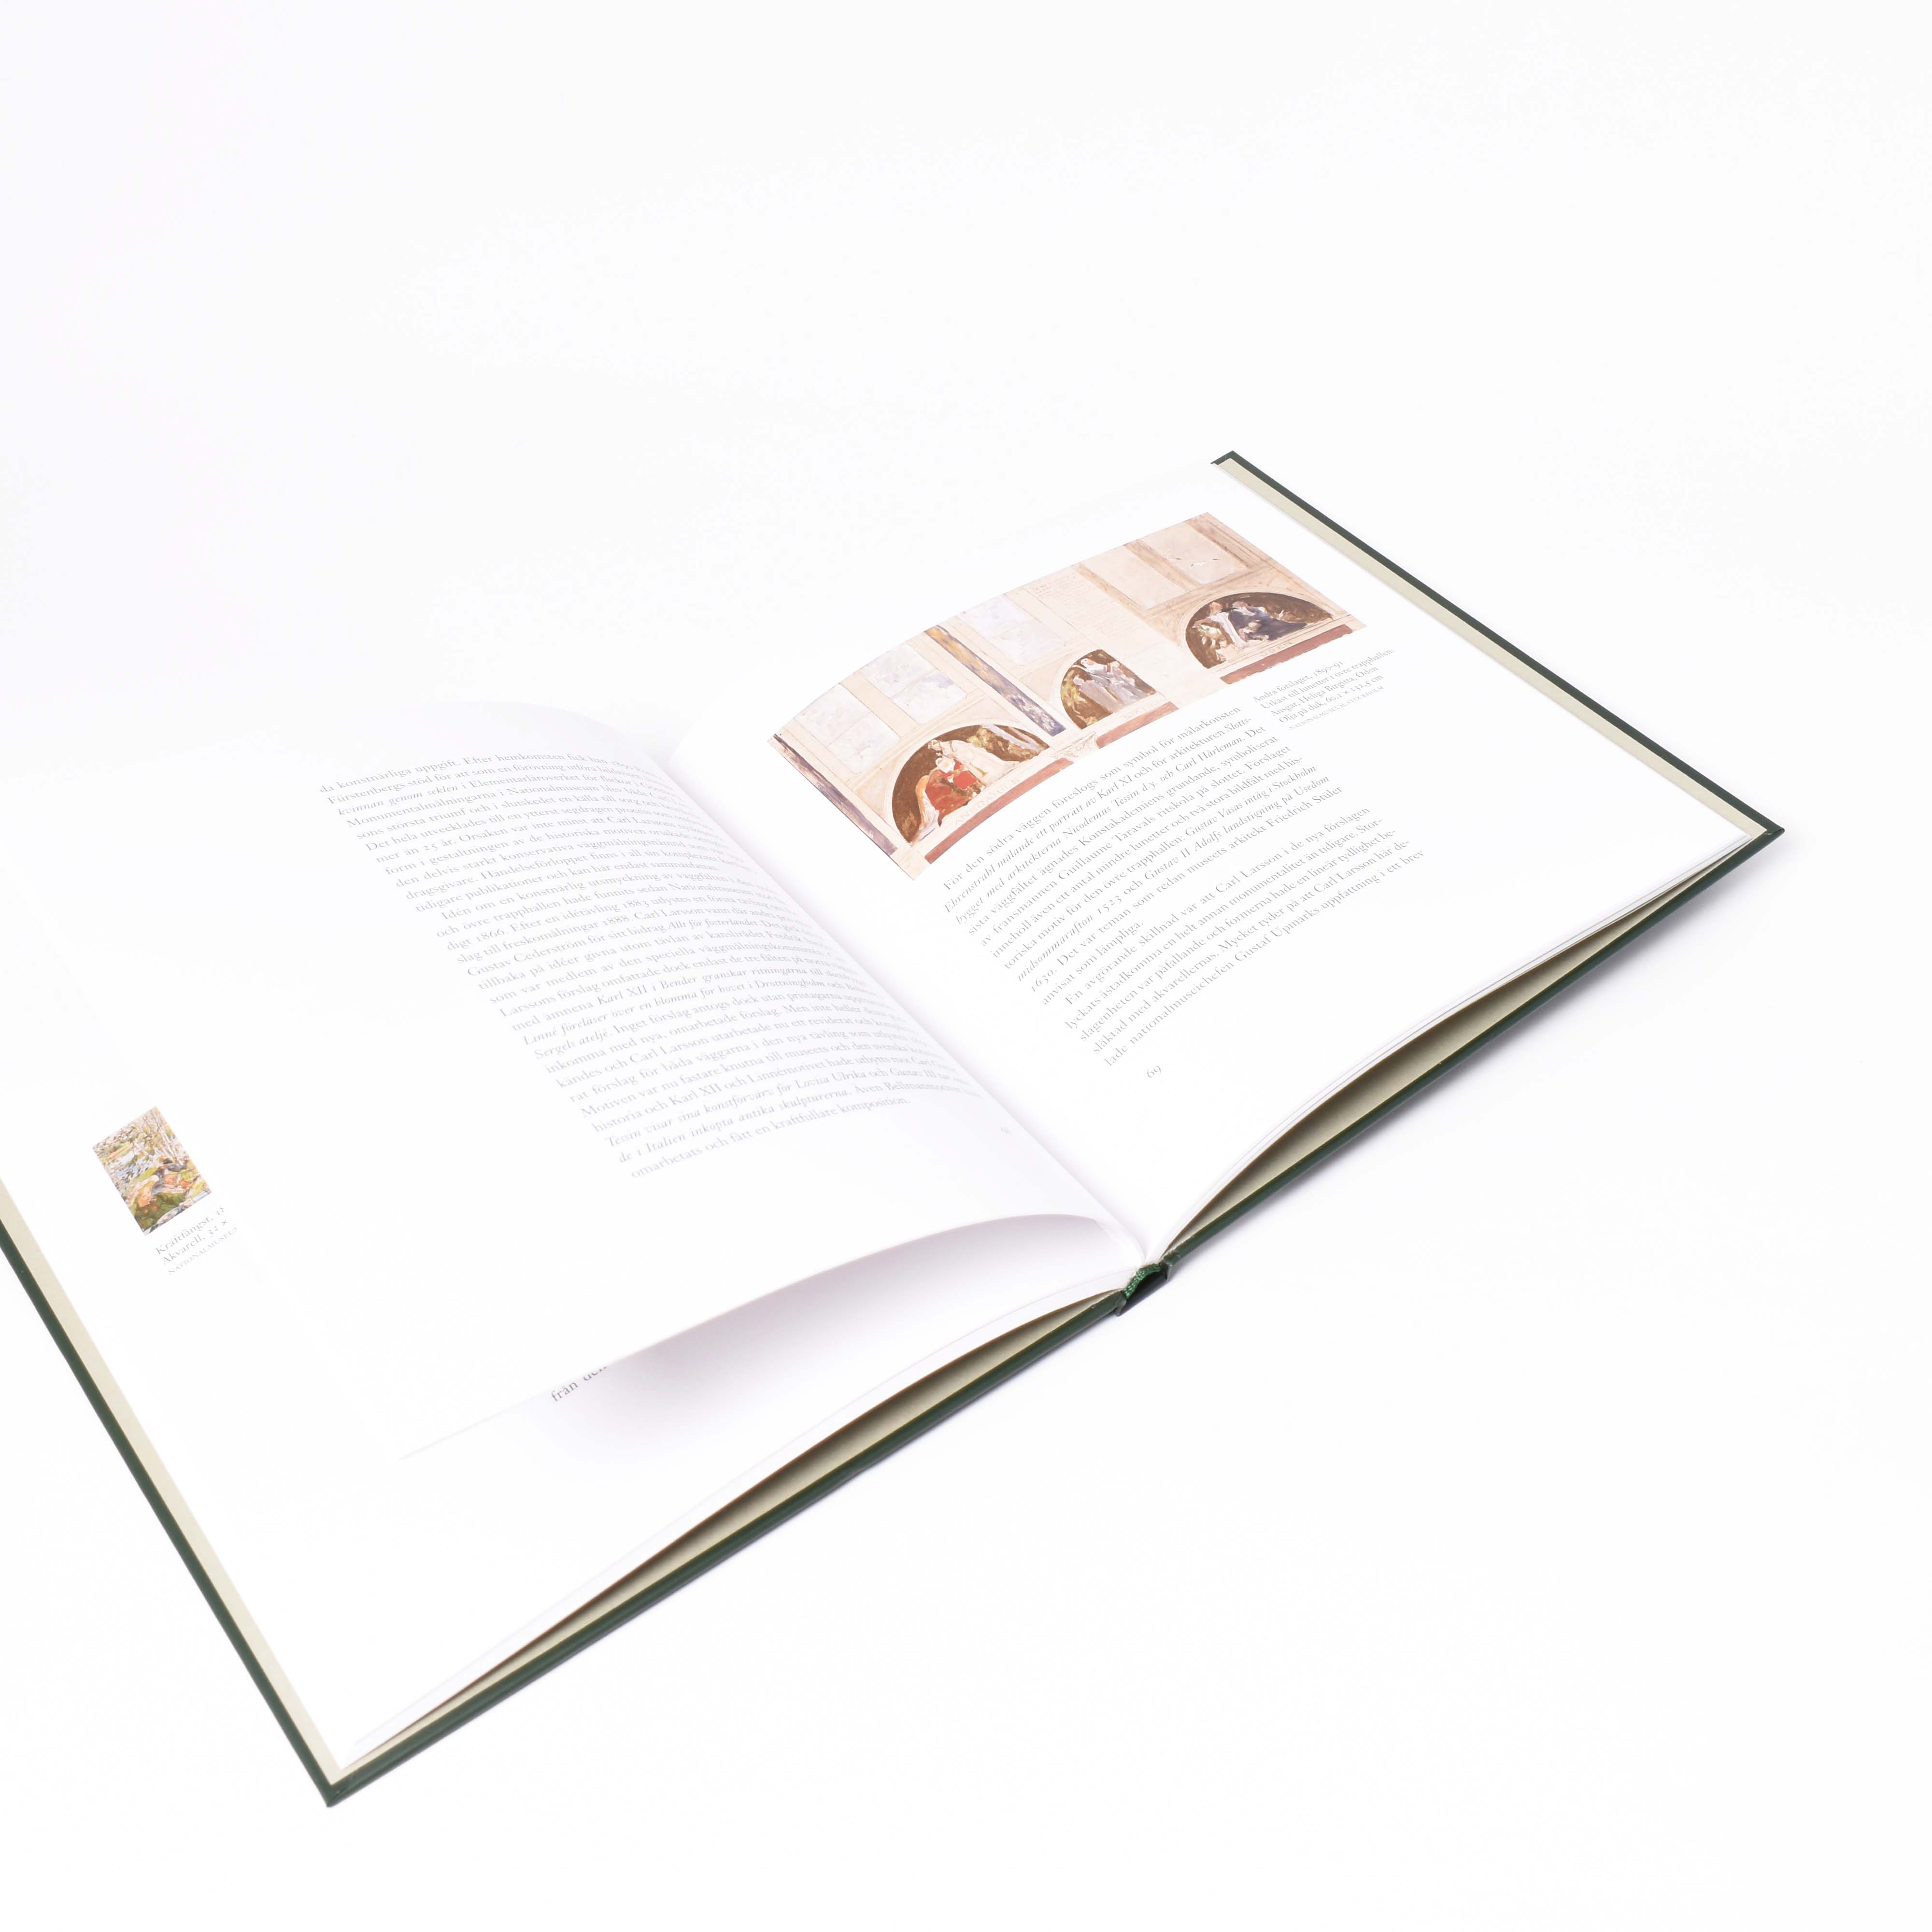 insida i boken Carl Larsson med motiv från konstnärens frescer